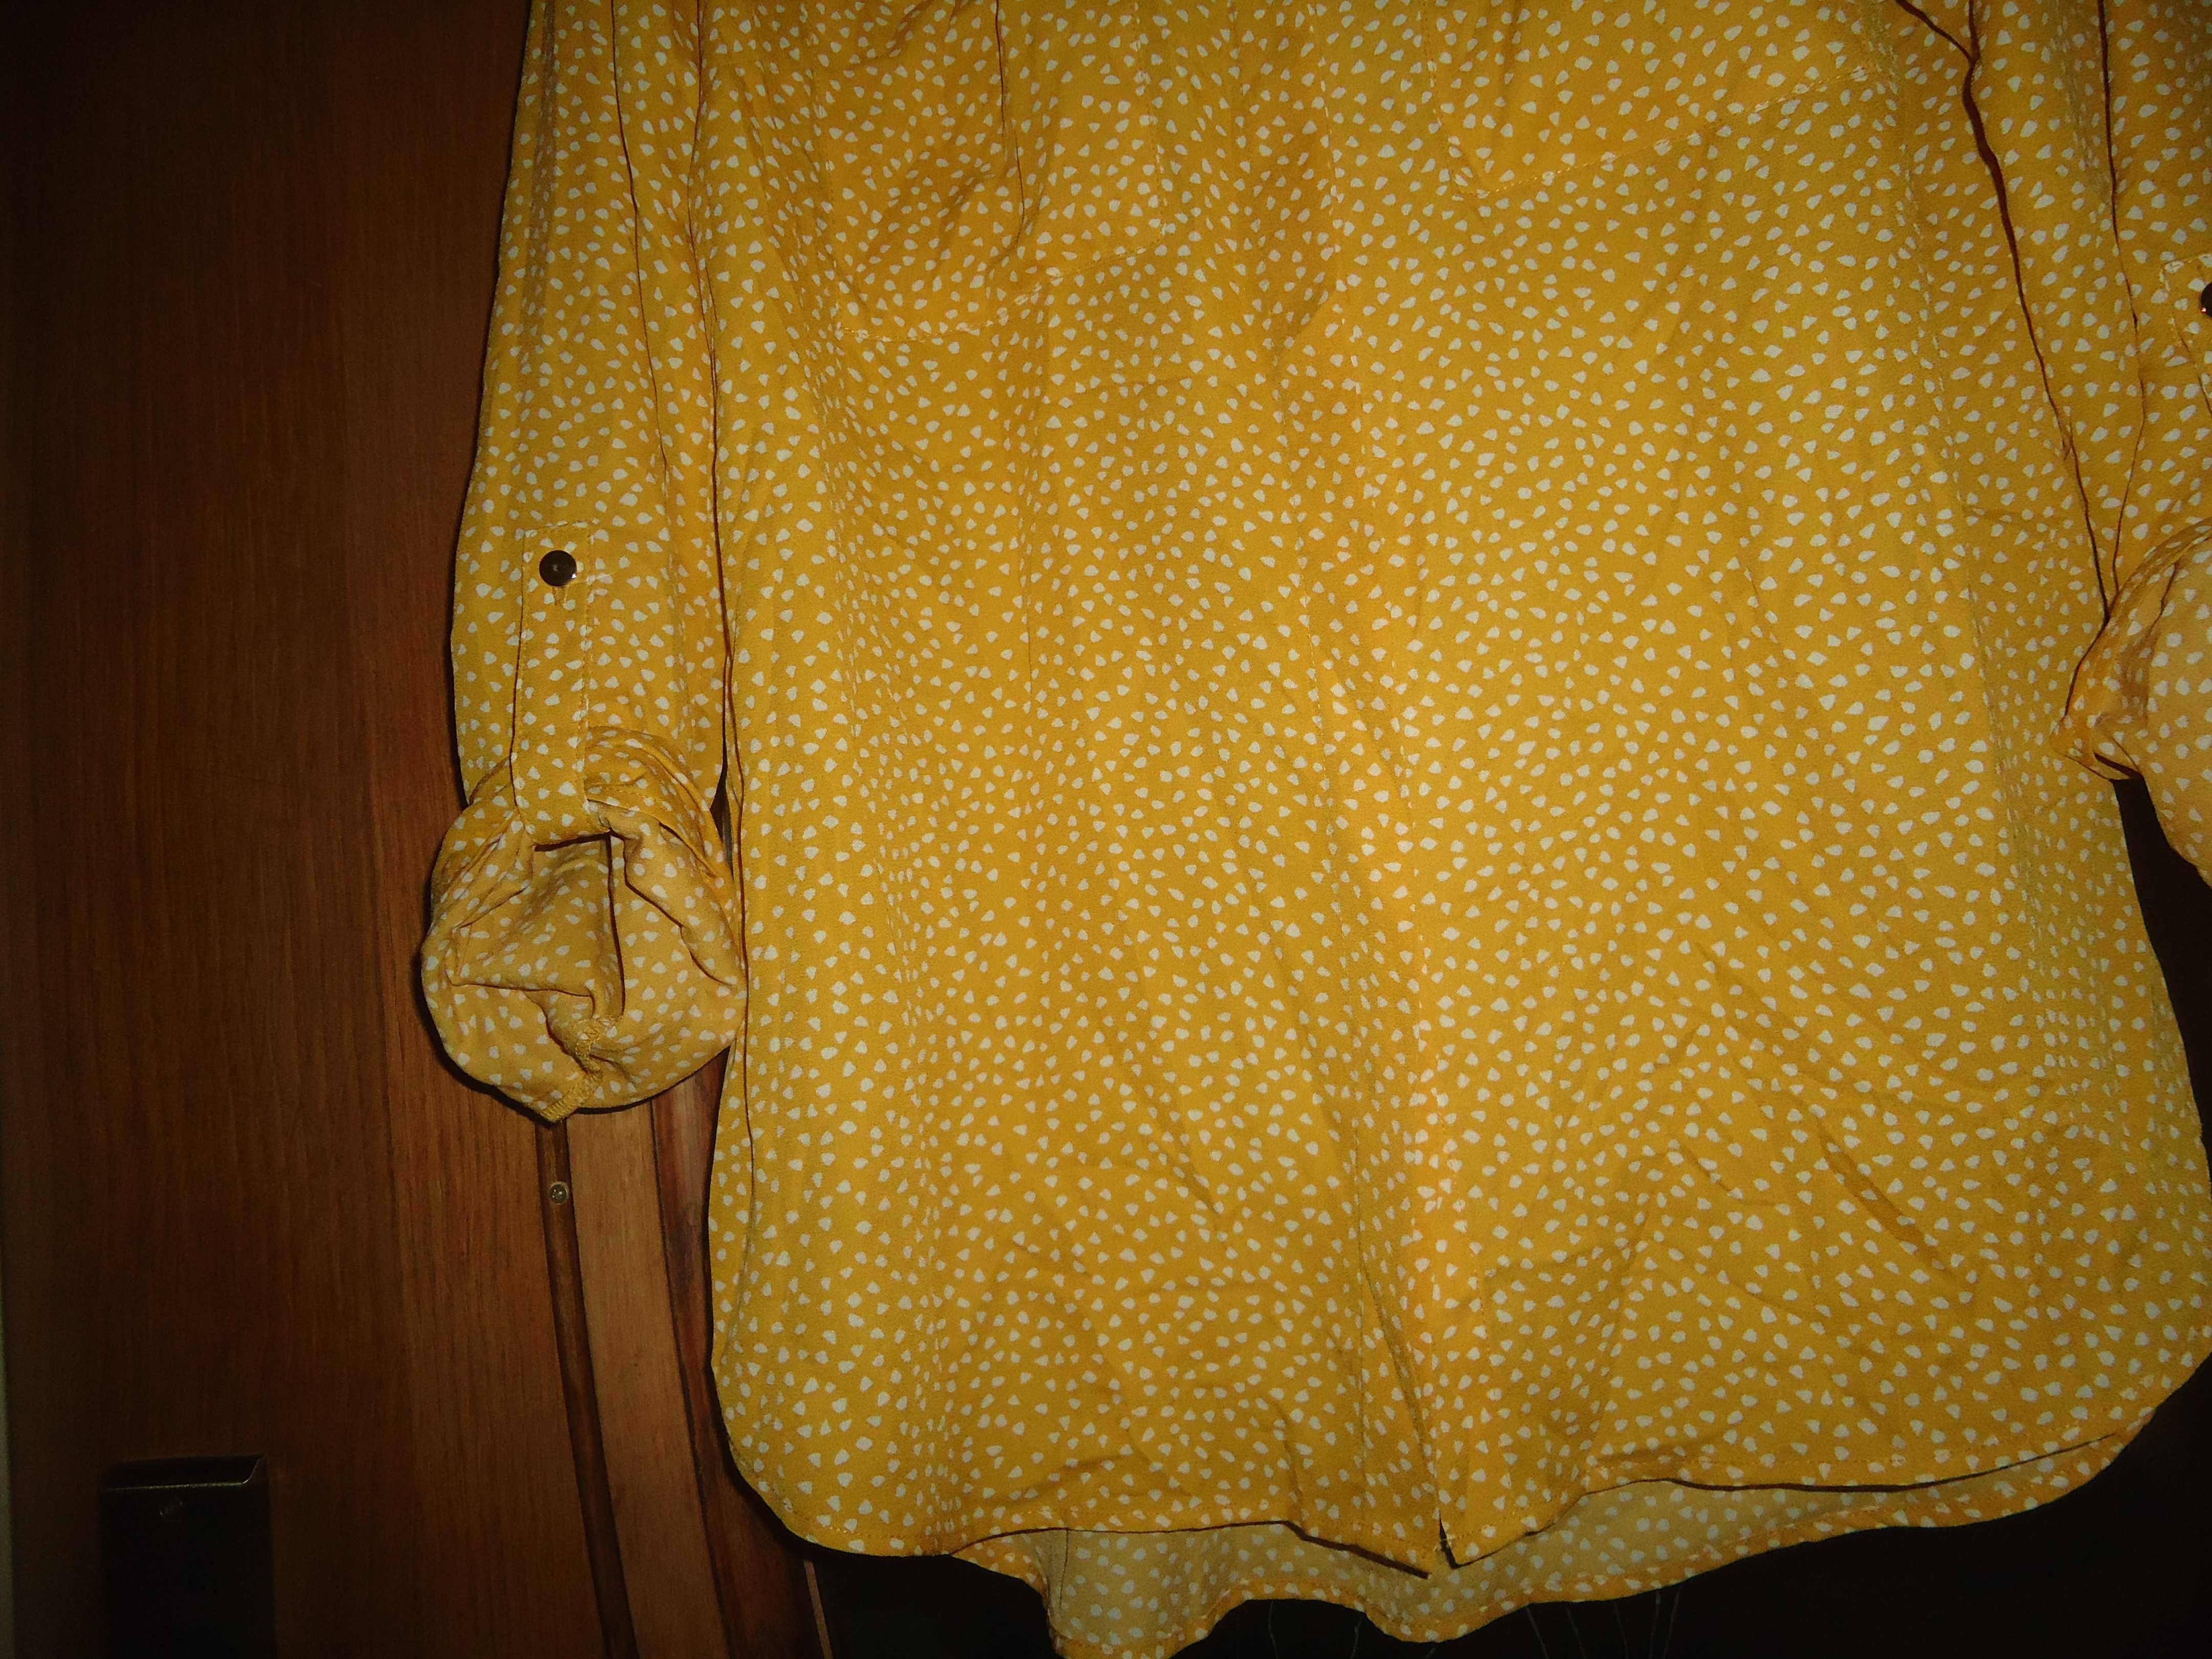 Koszula Bluzka F&F w kolorze musztardowo-żółtym Rozmiar 36 S